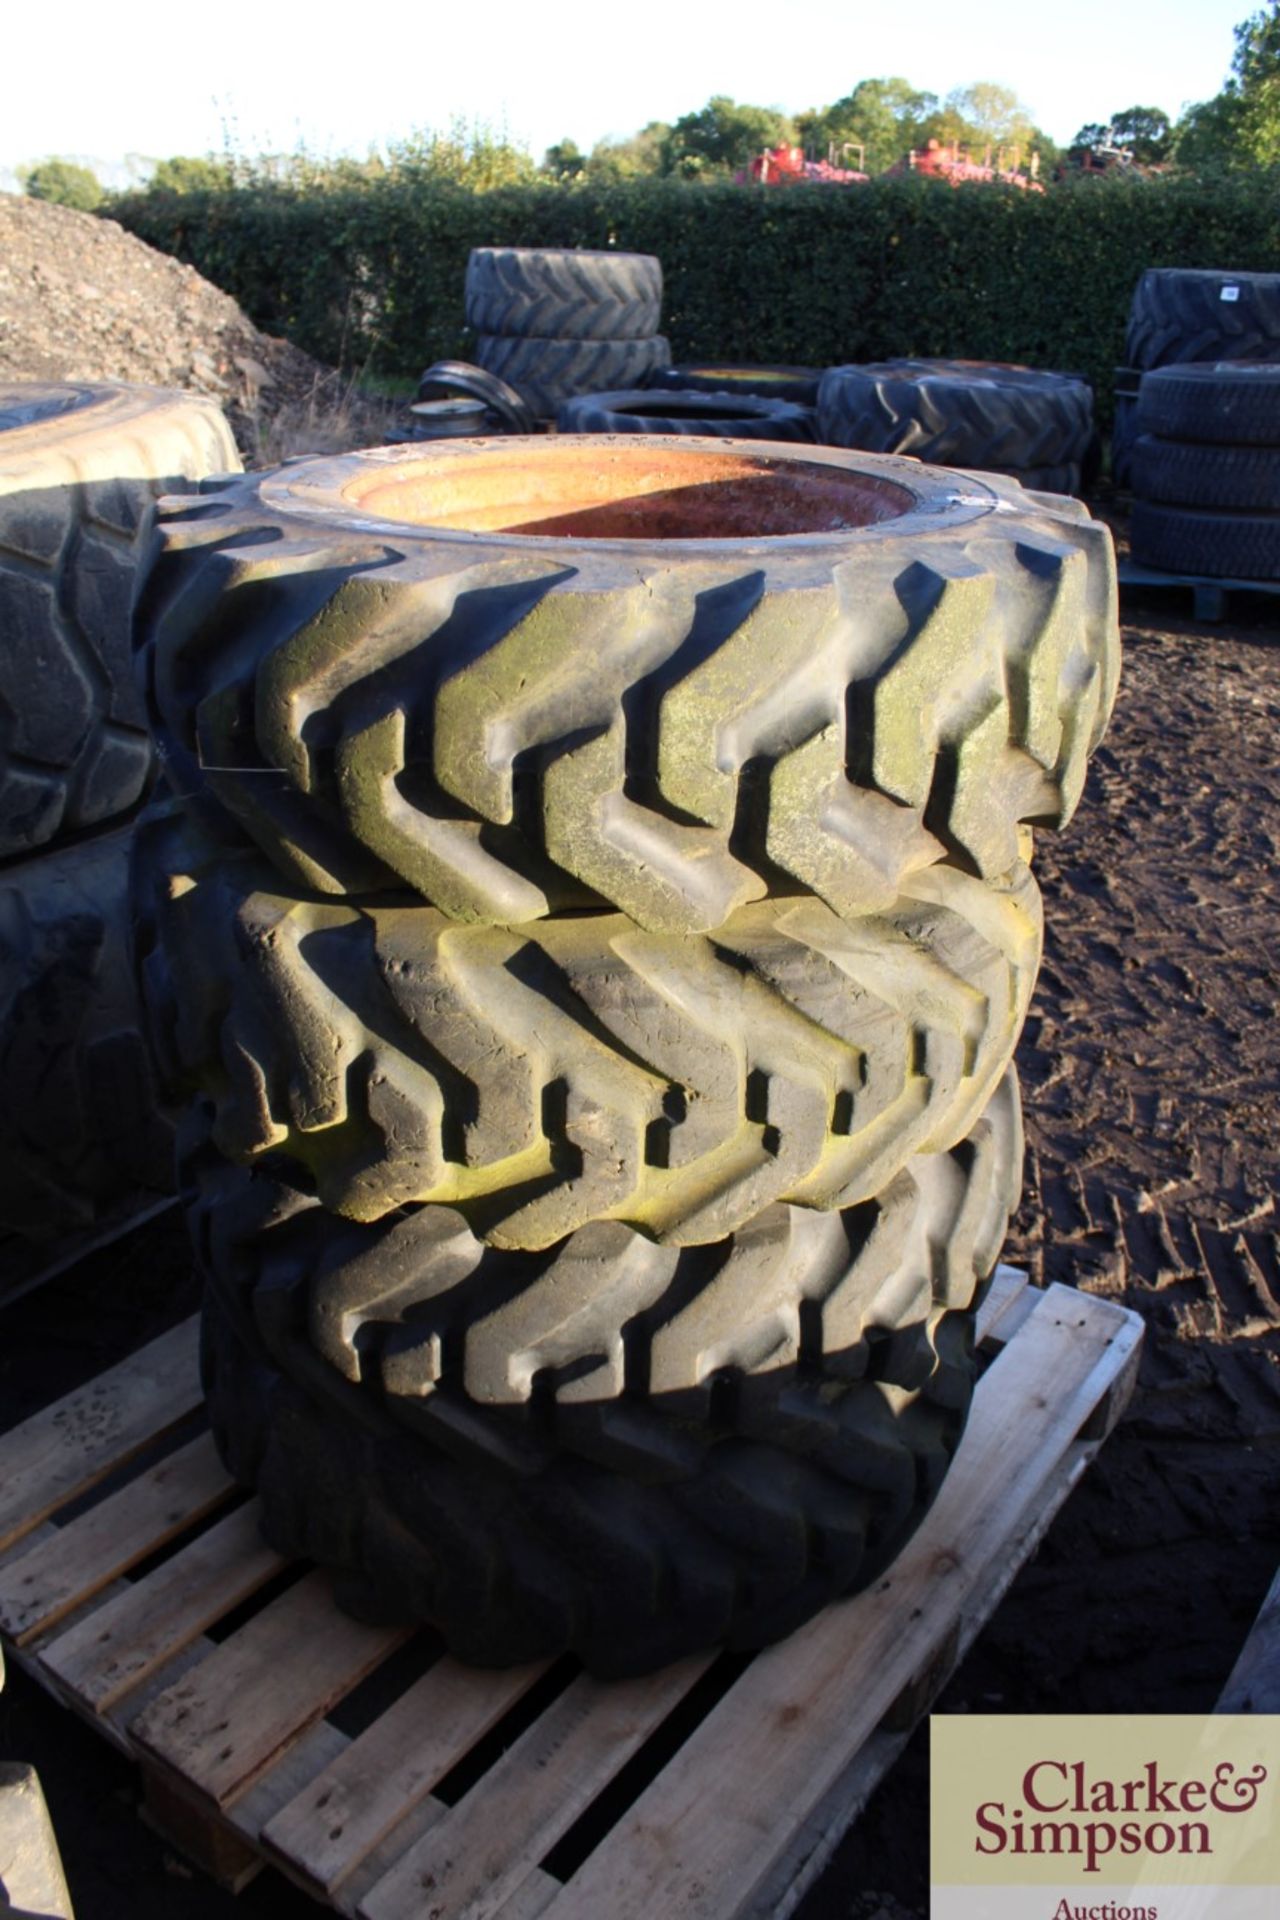 4x 10.5/80-18 dumper wheels and tyres. V